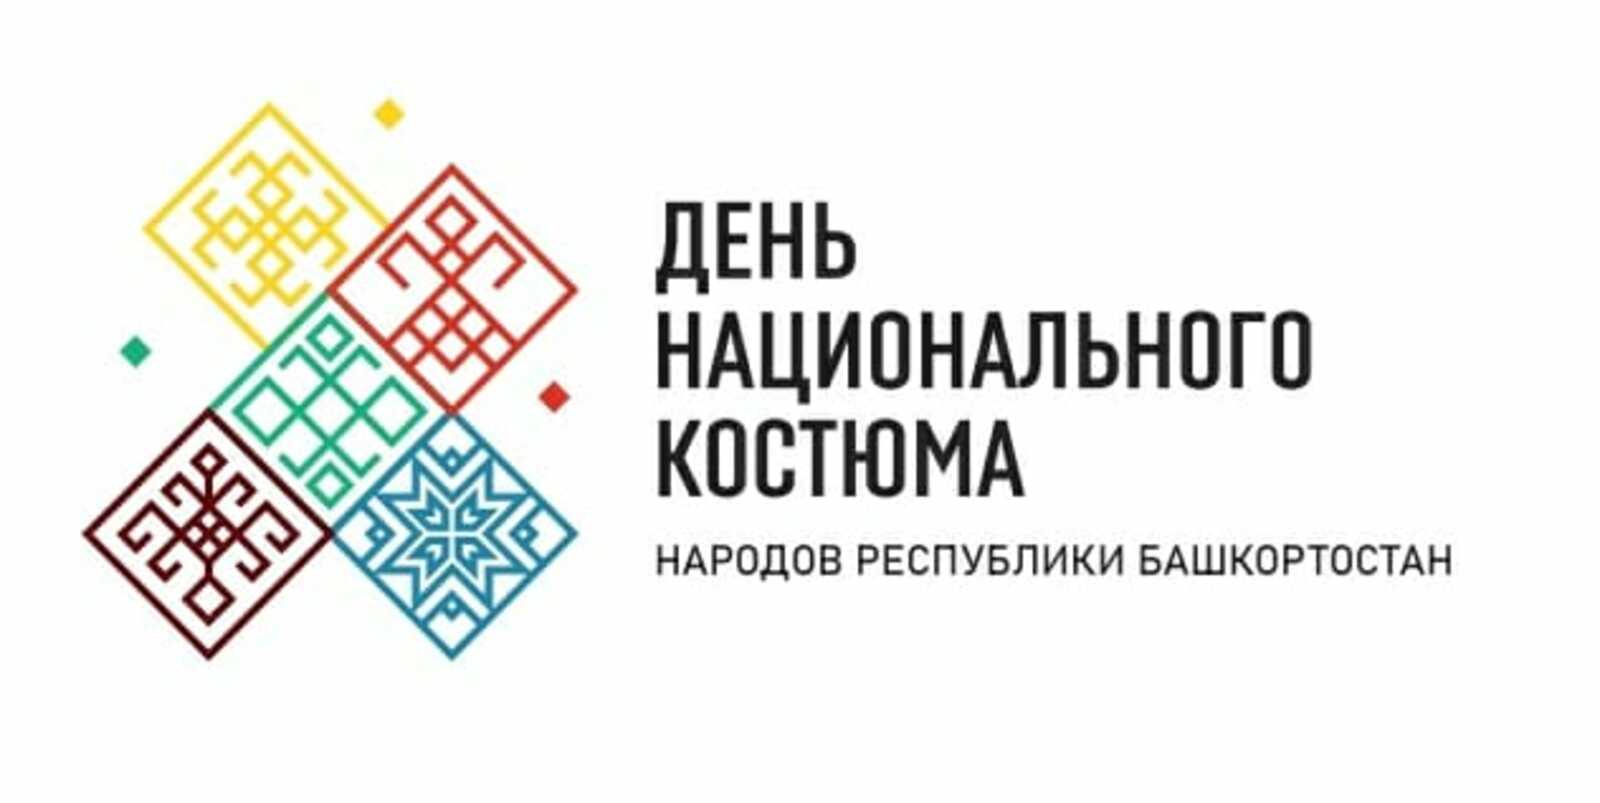 В Башкортостане пройдут мероприятия, посвященные Дню национального костюма народов республики